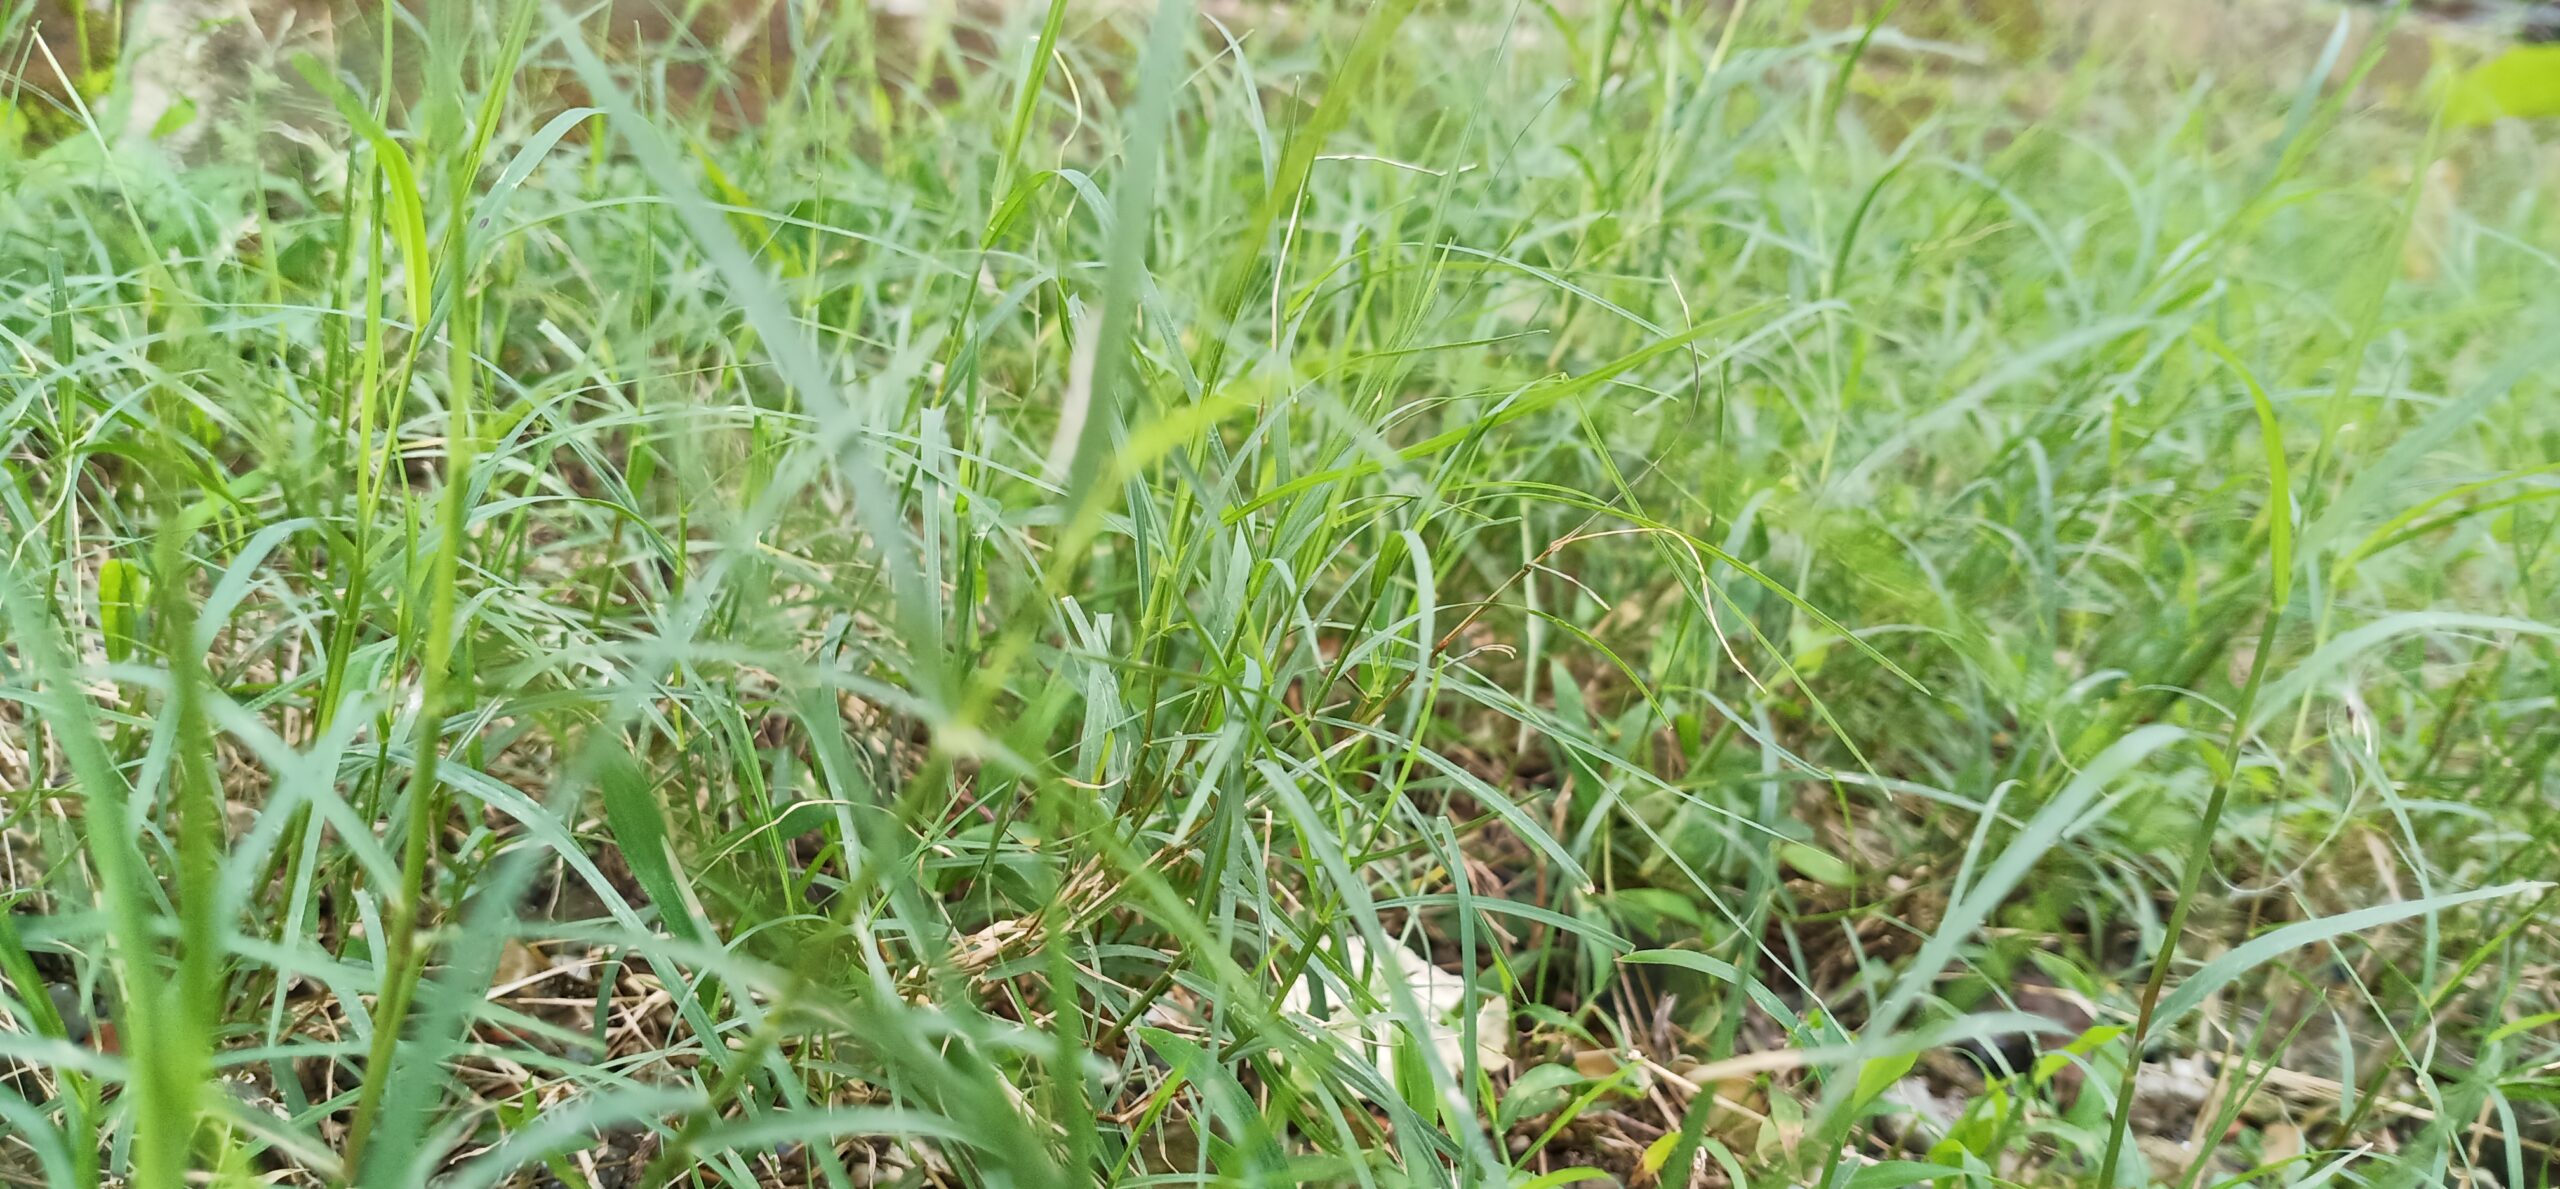 paragis grass